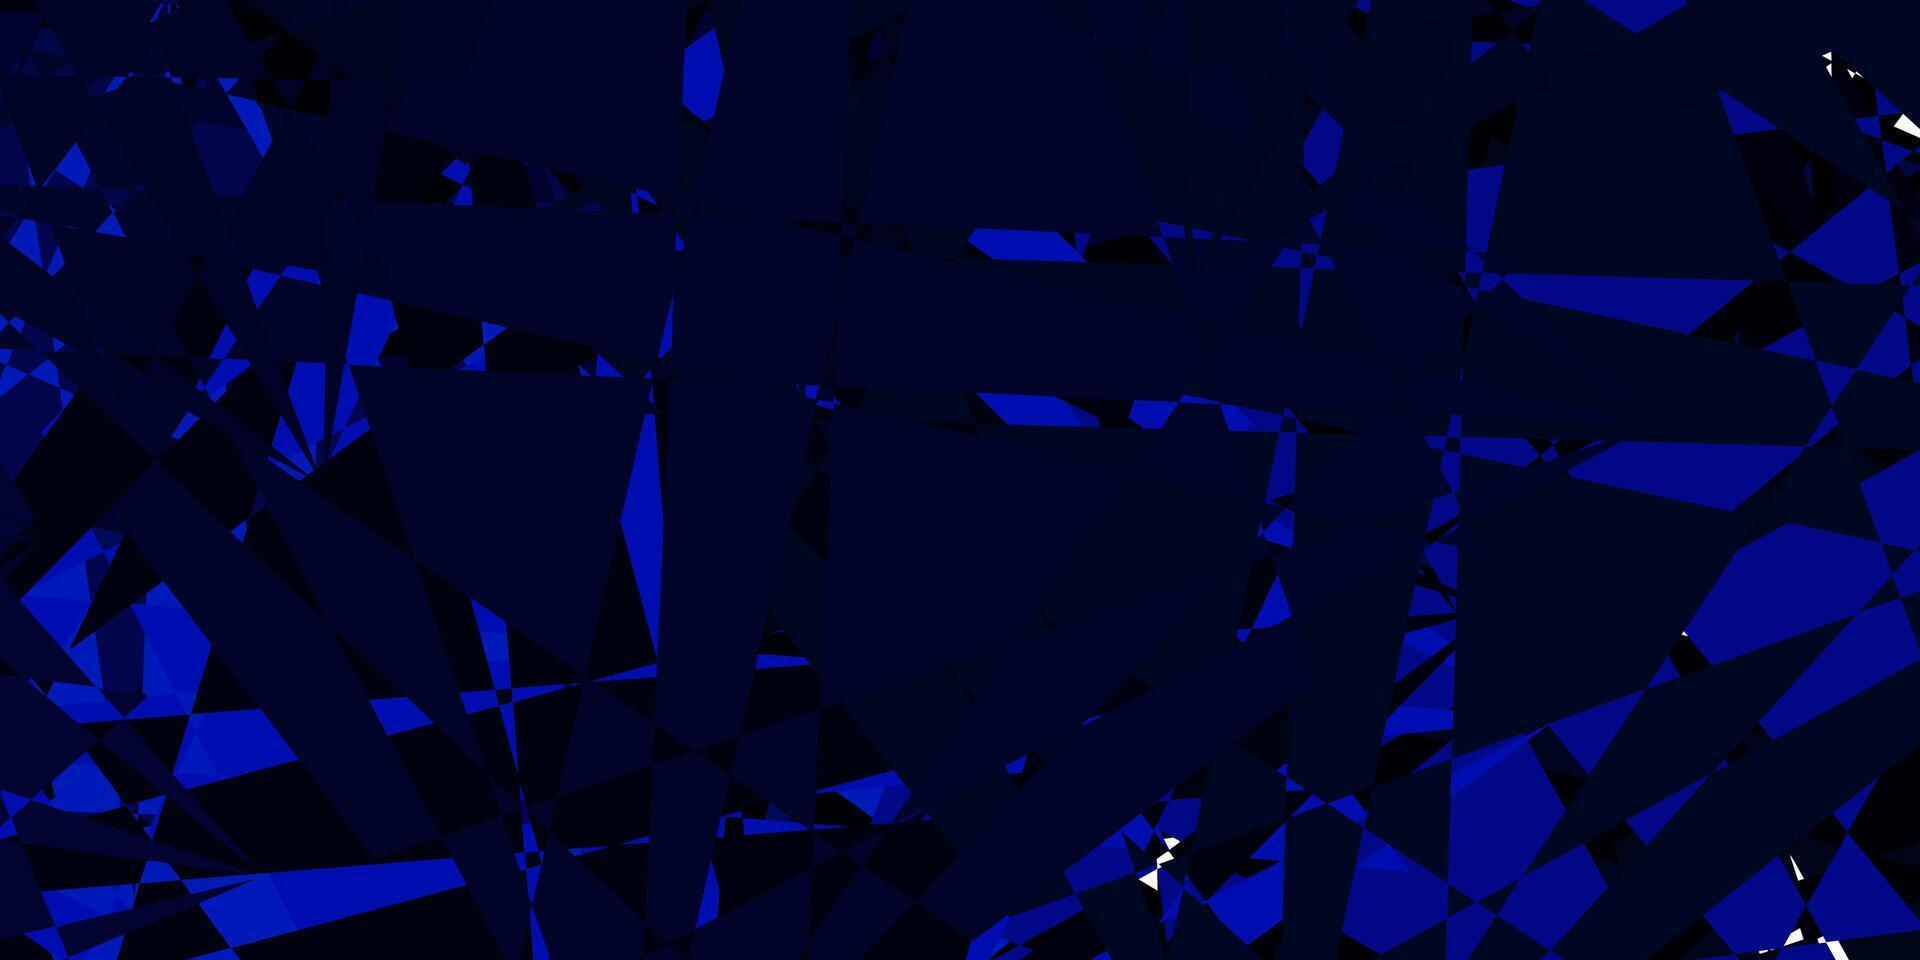 Telón de fondo de vector azul oscuro con triángulos, líneas.